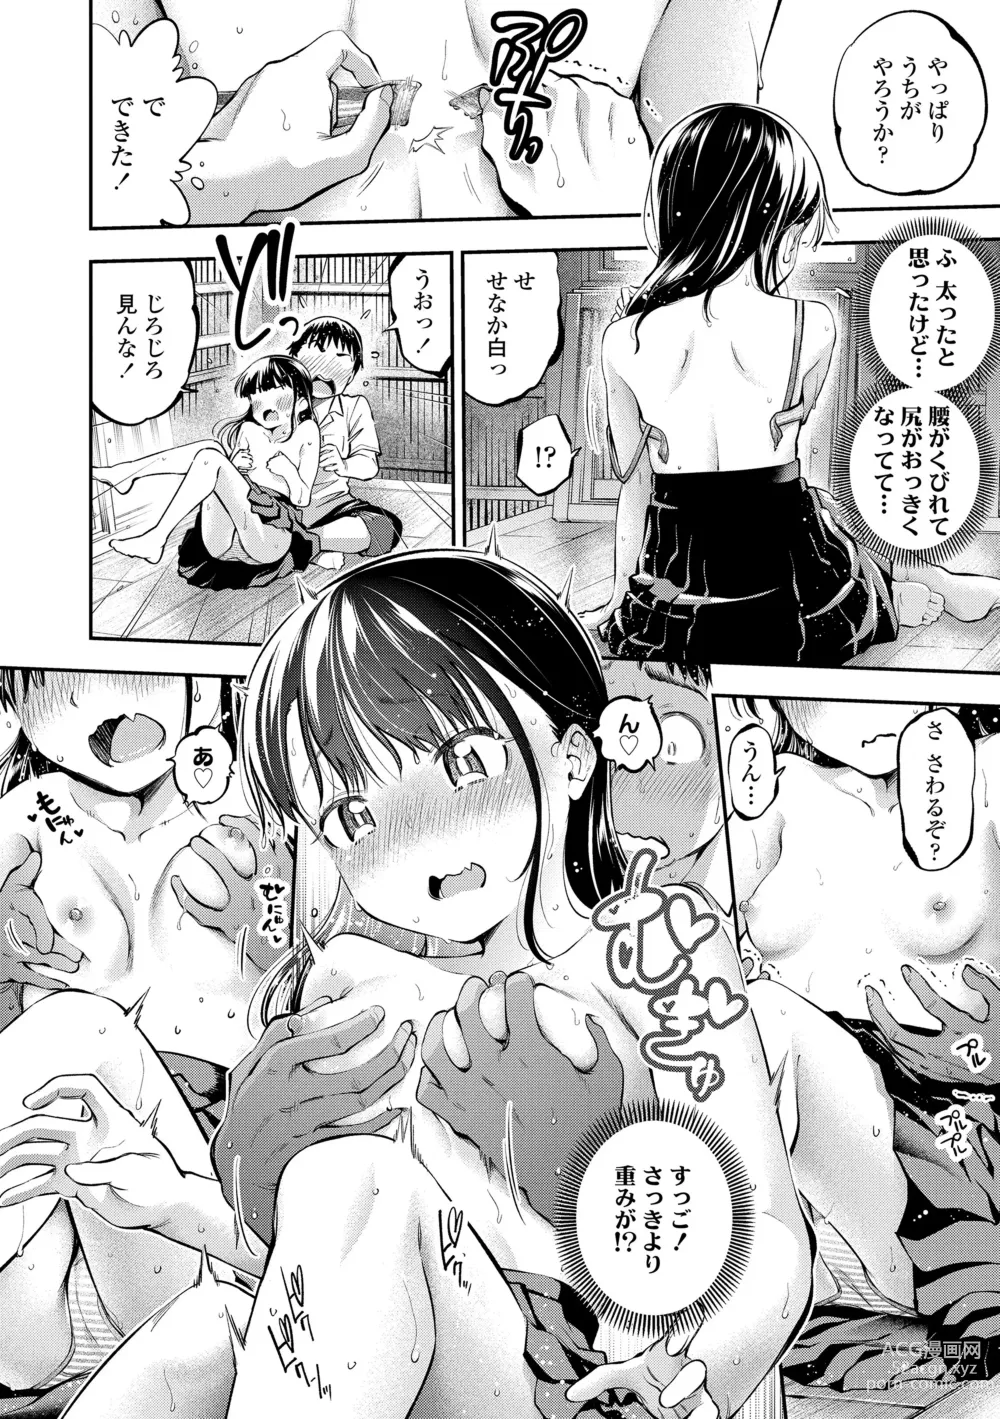 Page 16 of manga Onnanoko ni Shite yo - Make me your first lover.